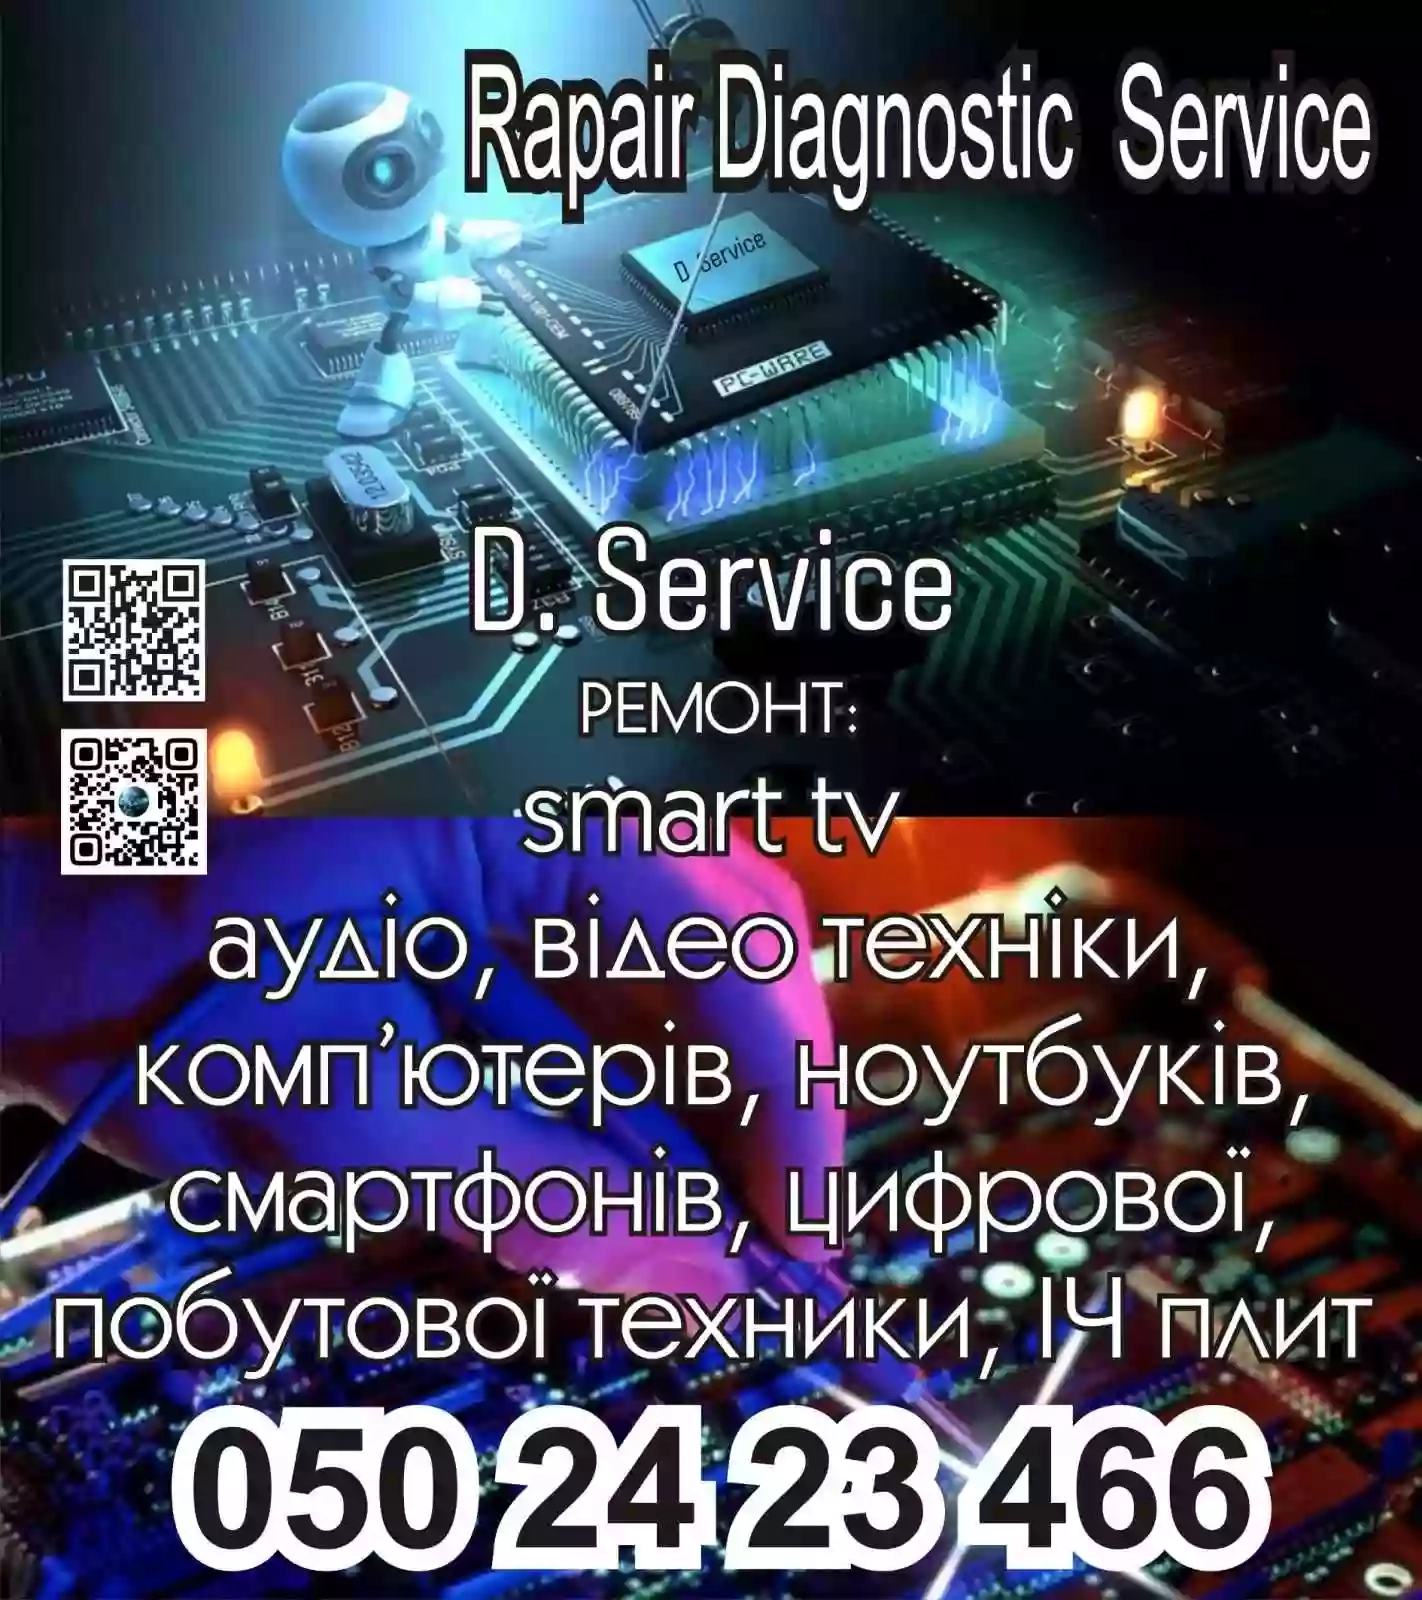 D. Service rapair diagnostic service